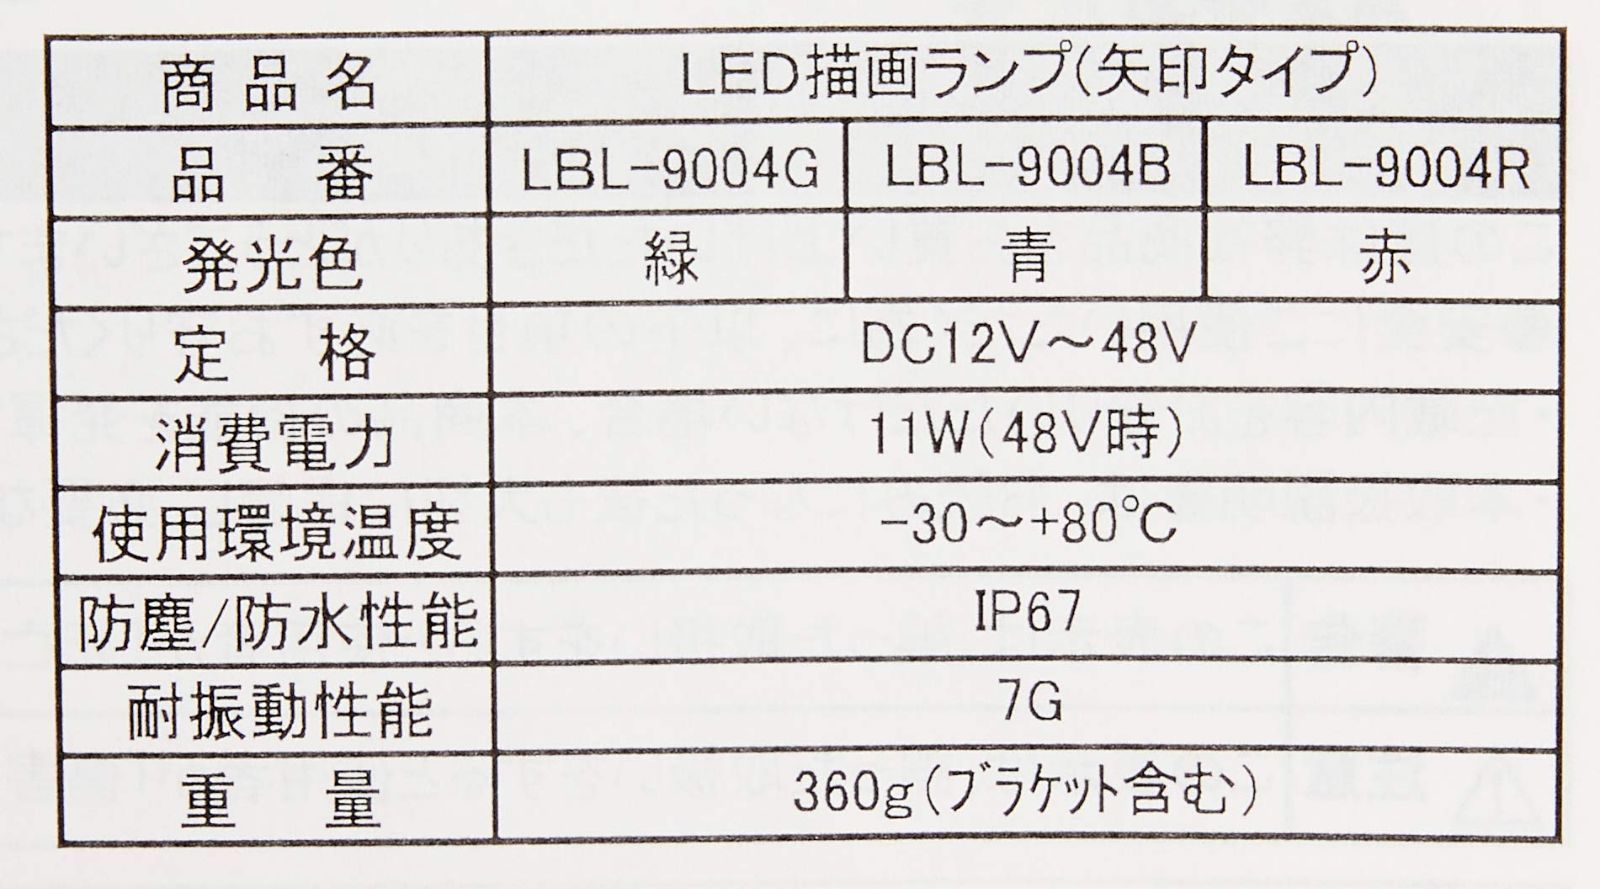 新品 LBL-9004B ブルー 矢印タイプ KOITO(小糸製作所)LED描画ランプ